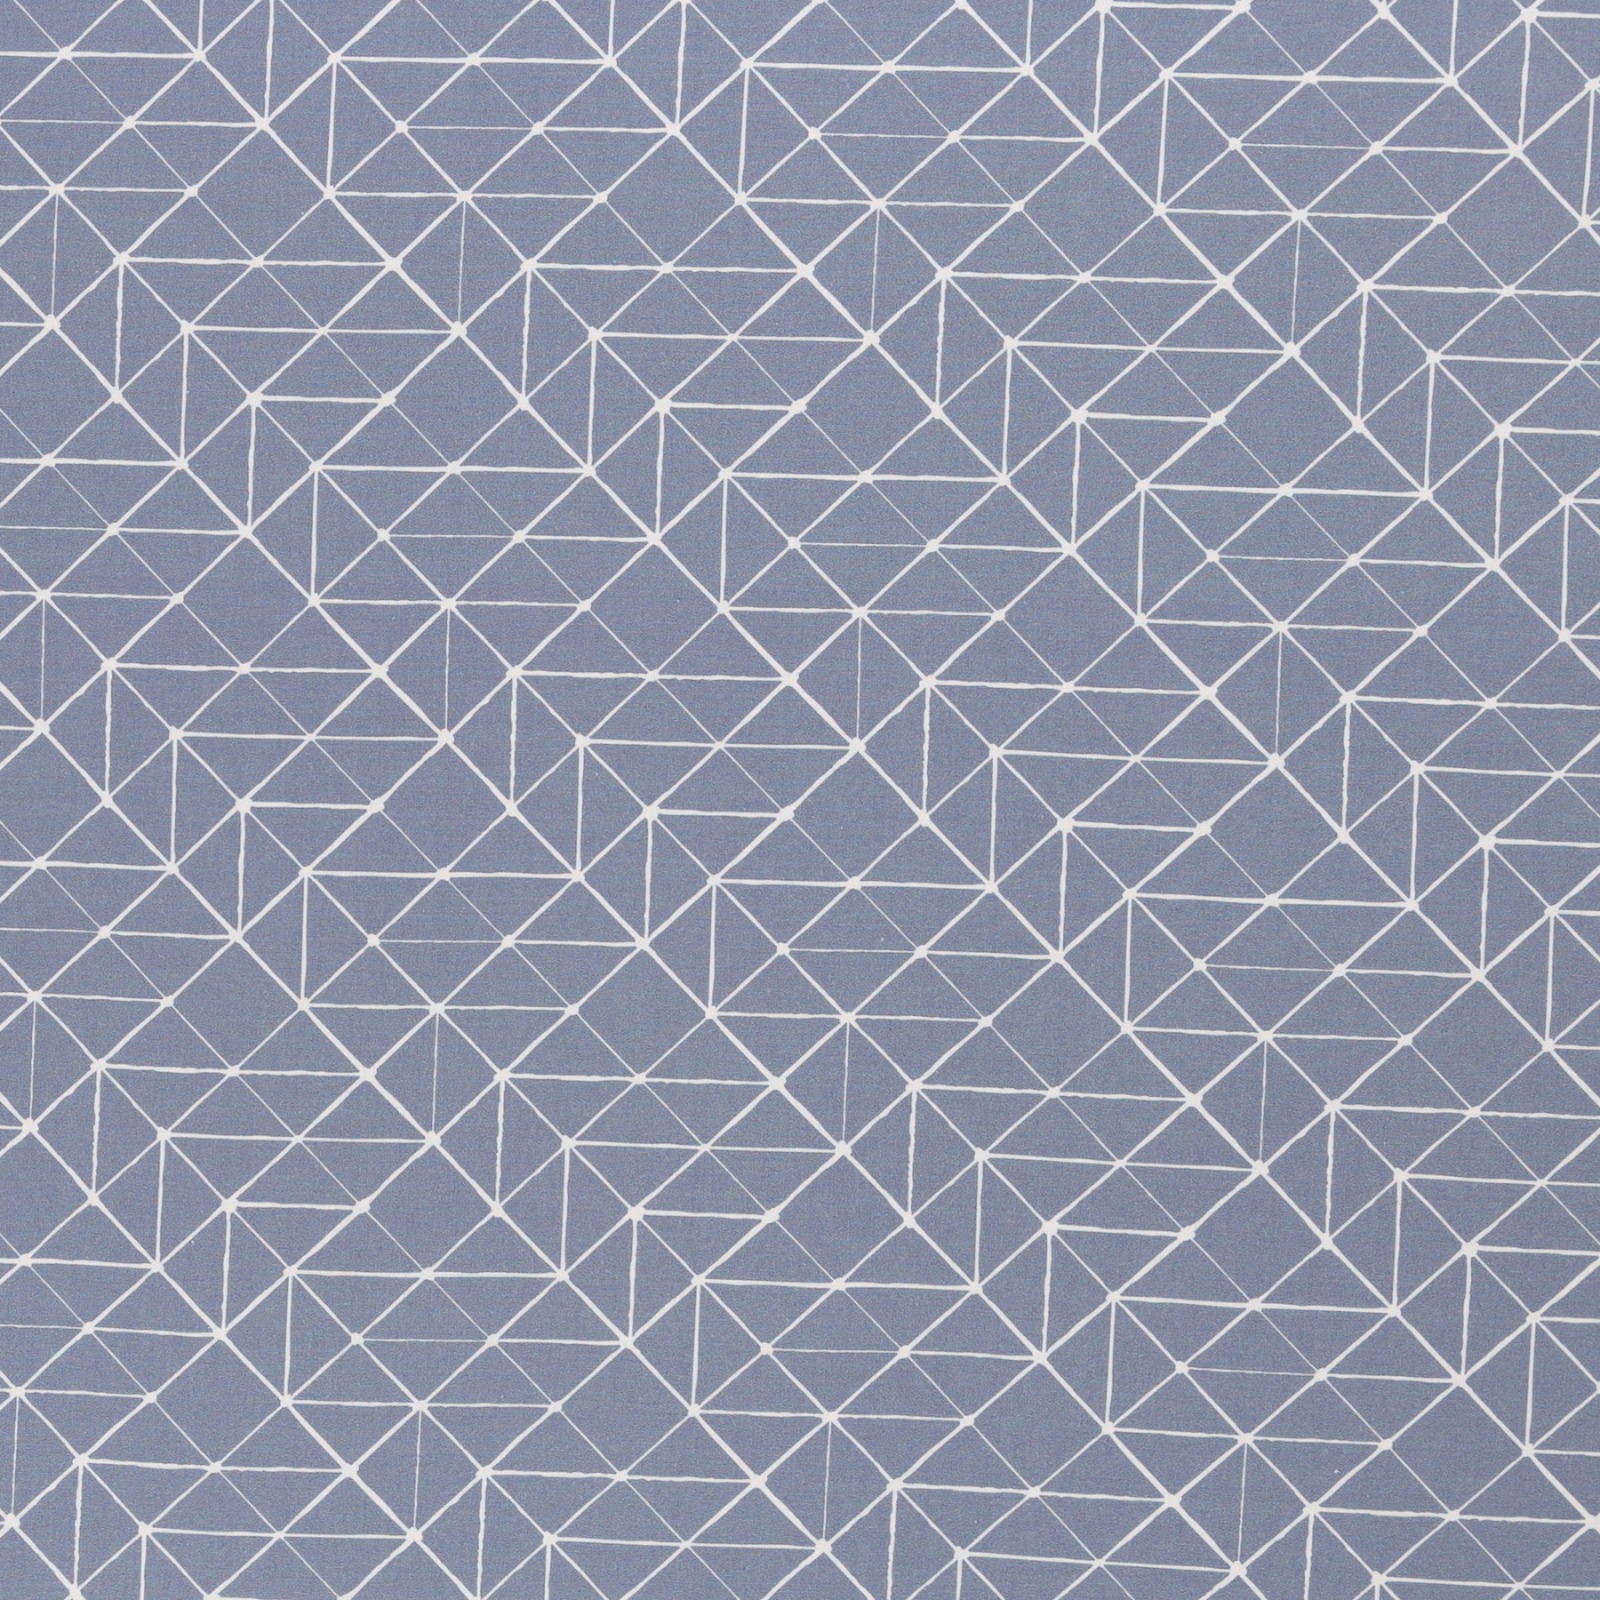 Baumwolle 9,60 EUR/m geometrische Linien rauchblau weiß, Baumwollstoff Kurt Swafing, Stoffe